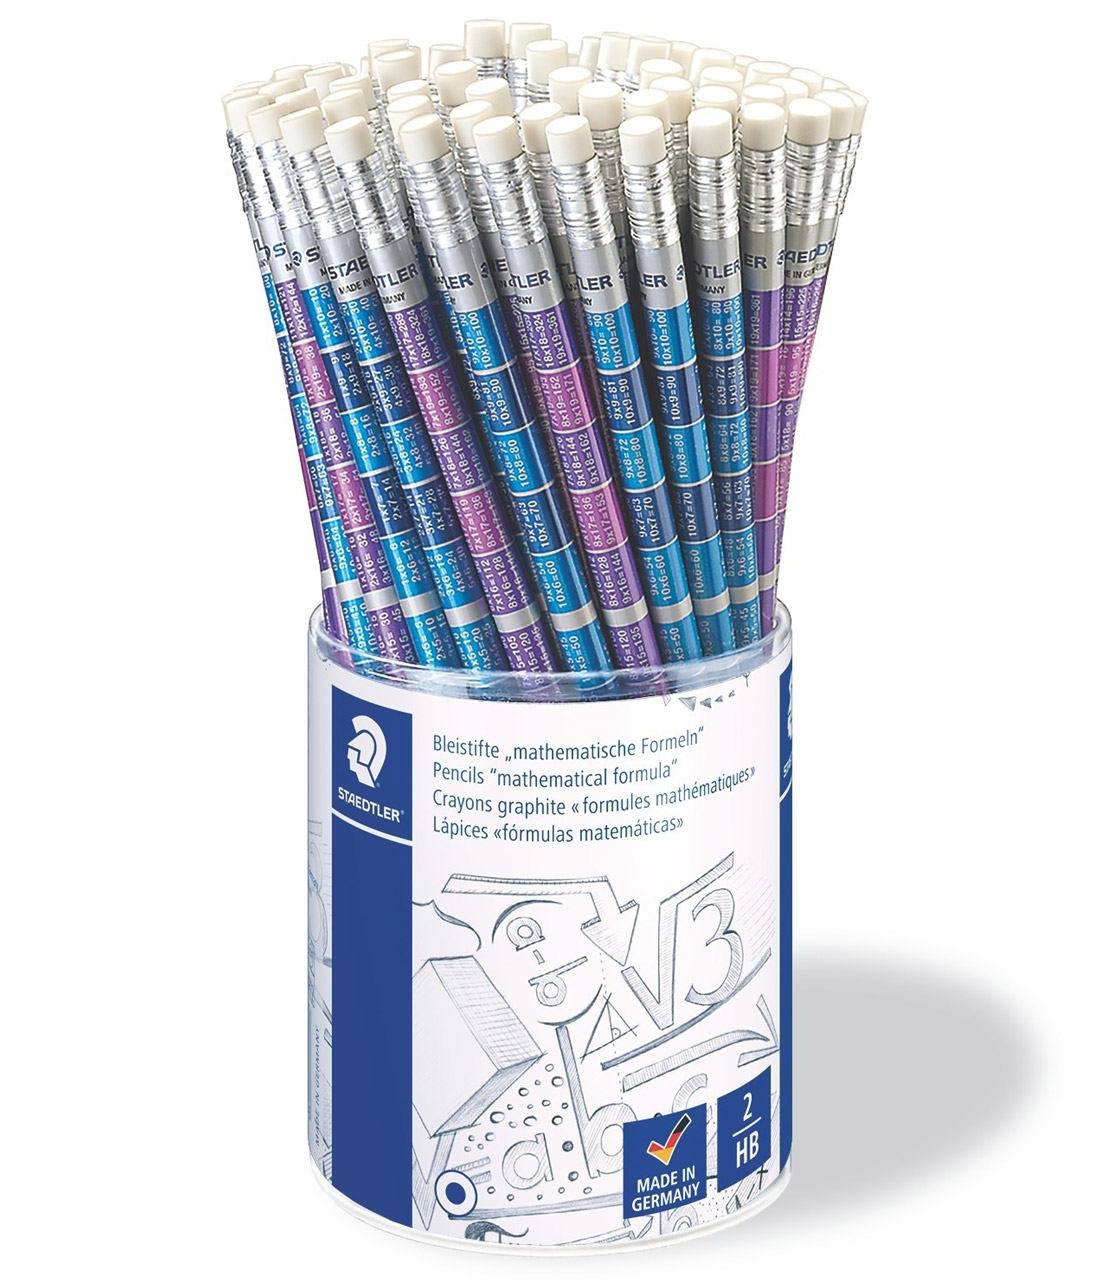 60 Rechen Bleistifte mit Radiergummi mit dem 1x1 18 cm 